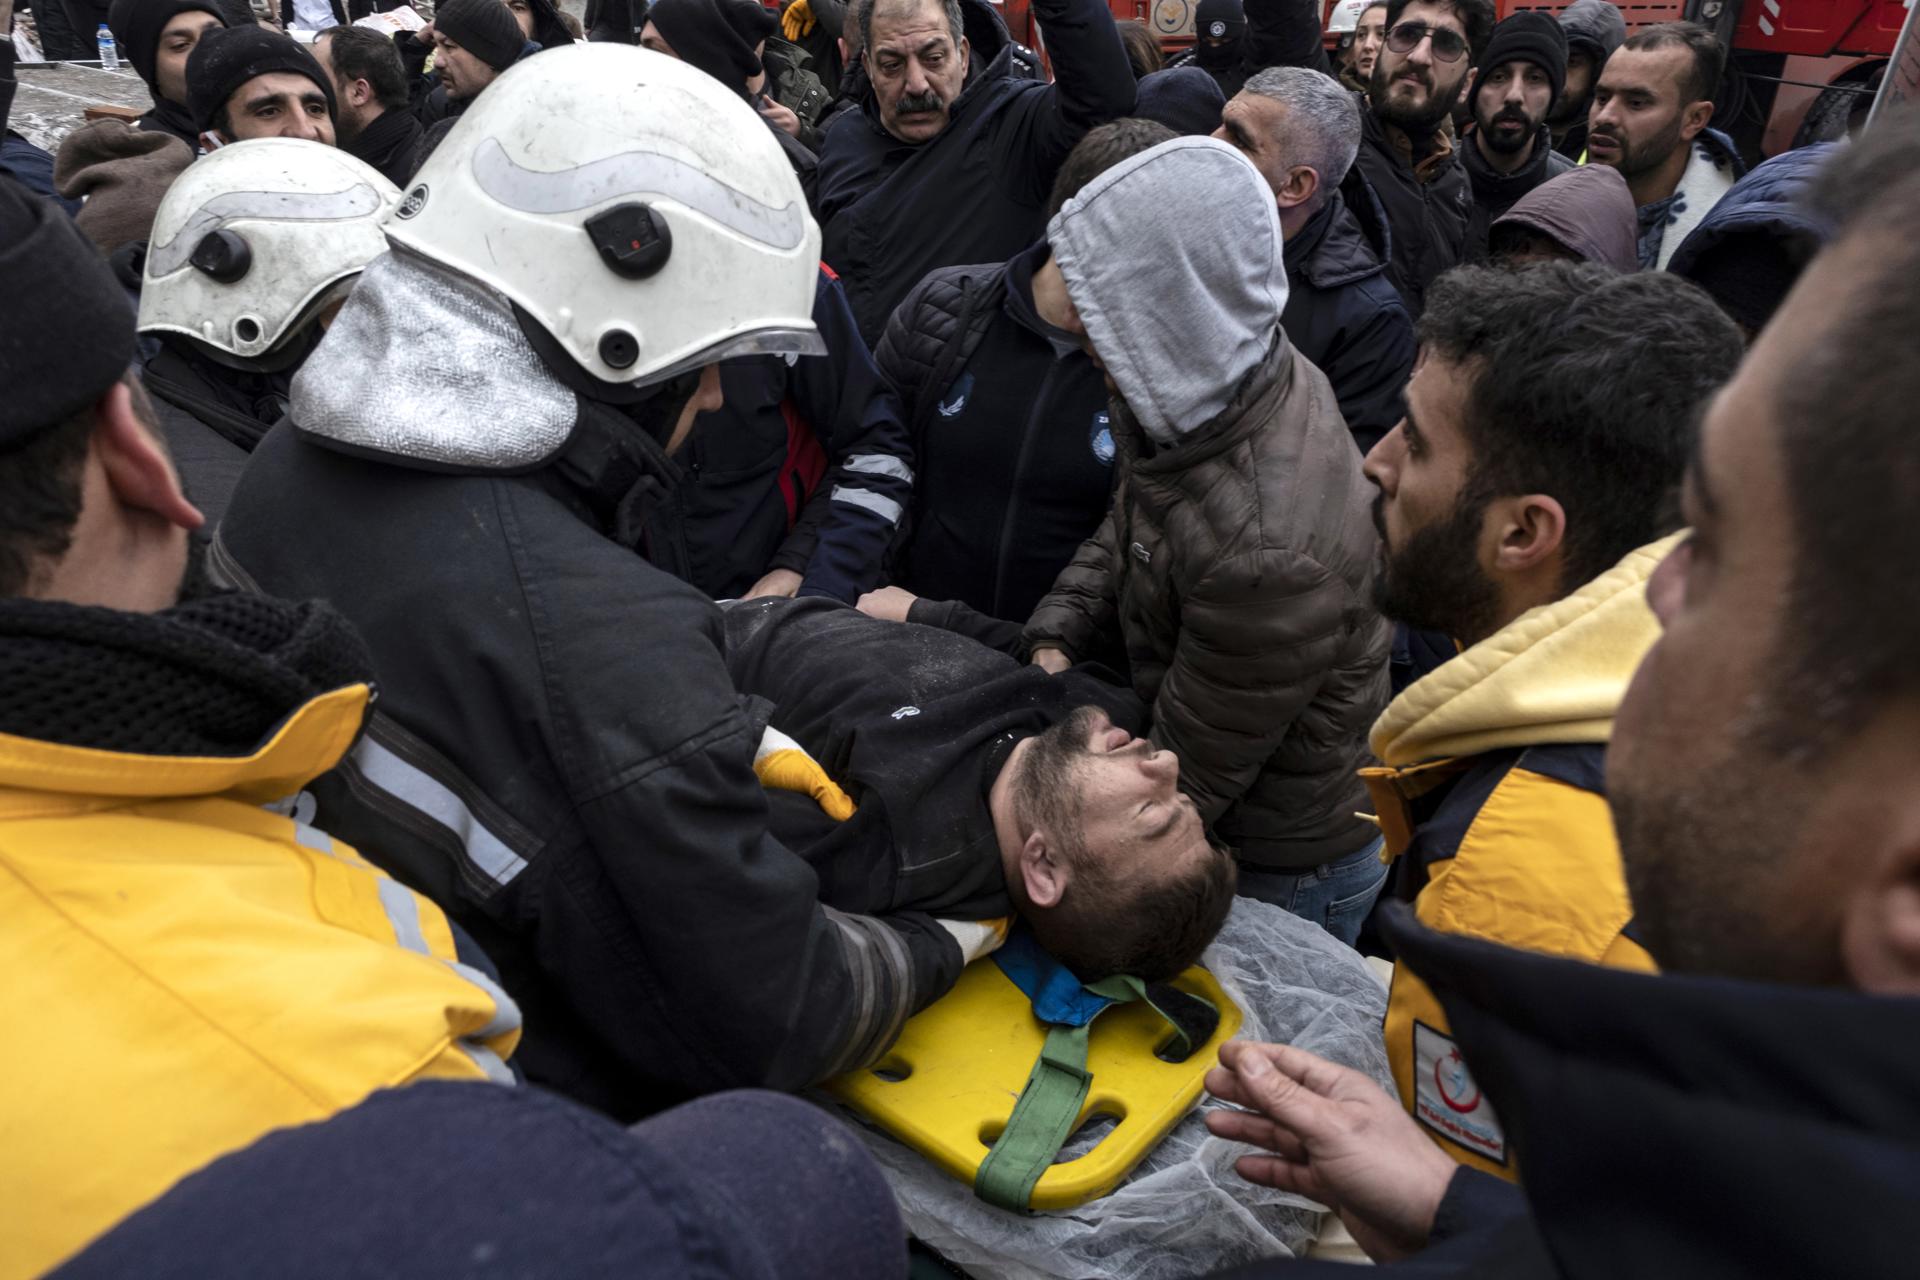 Los supervivientes del terremoto en Turquía relatan el horror: "He pensado que al menos moriríamos juntos"